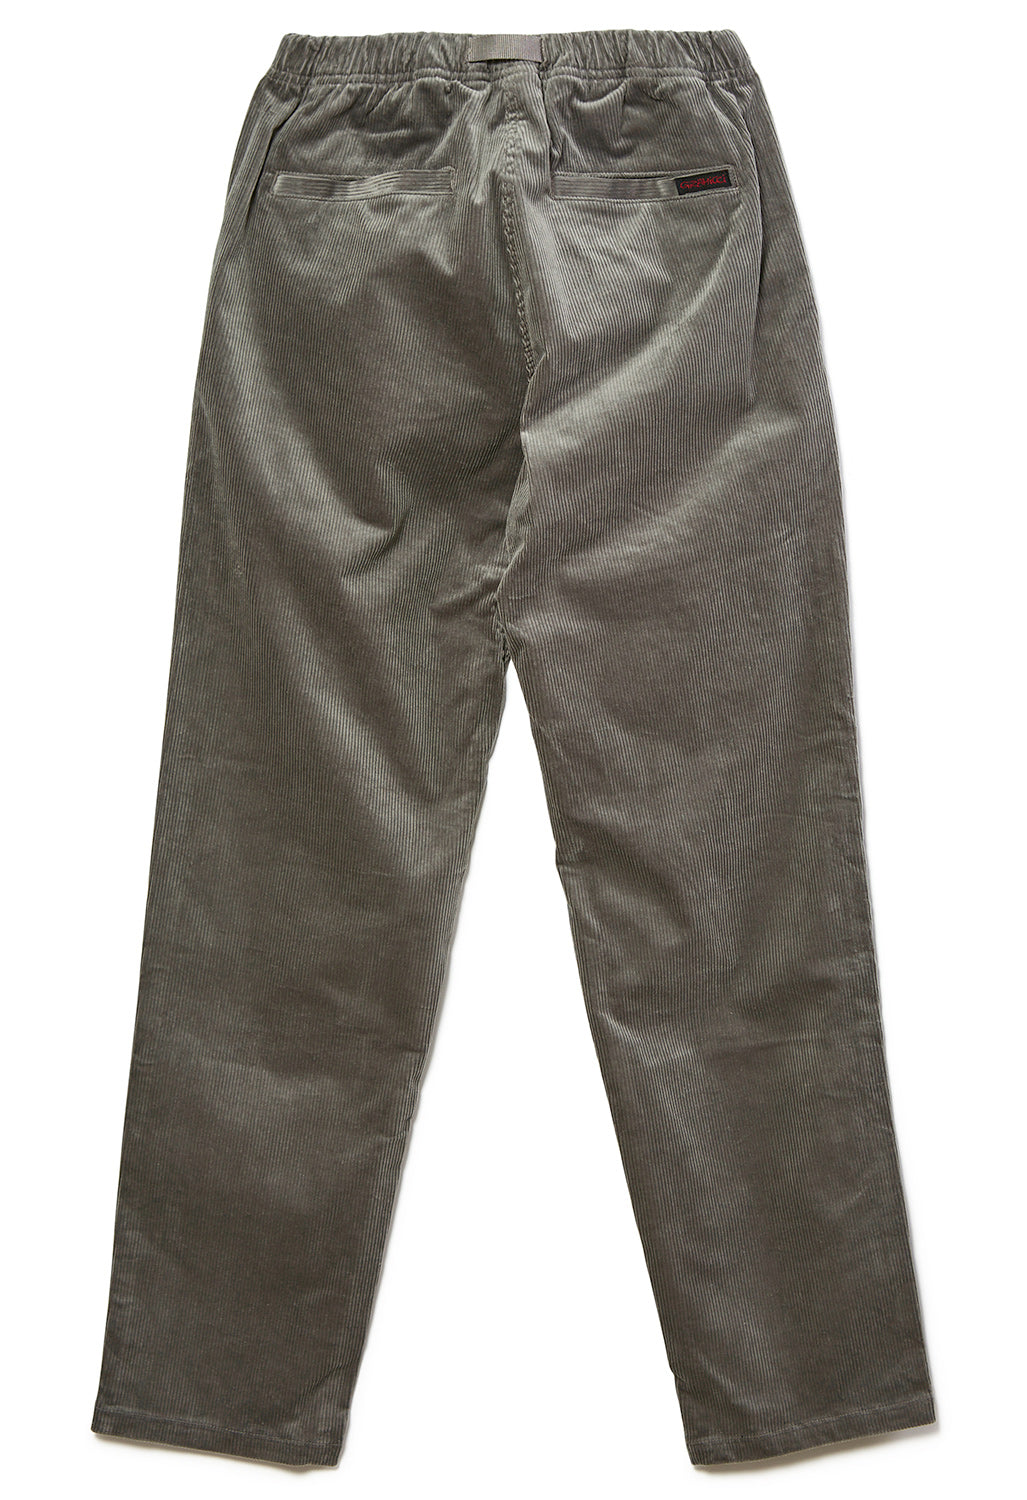 Gramicci Corduroy Men's G Pants - Grey